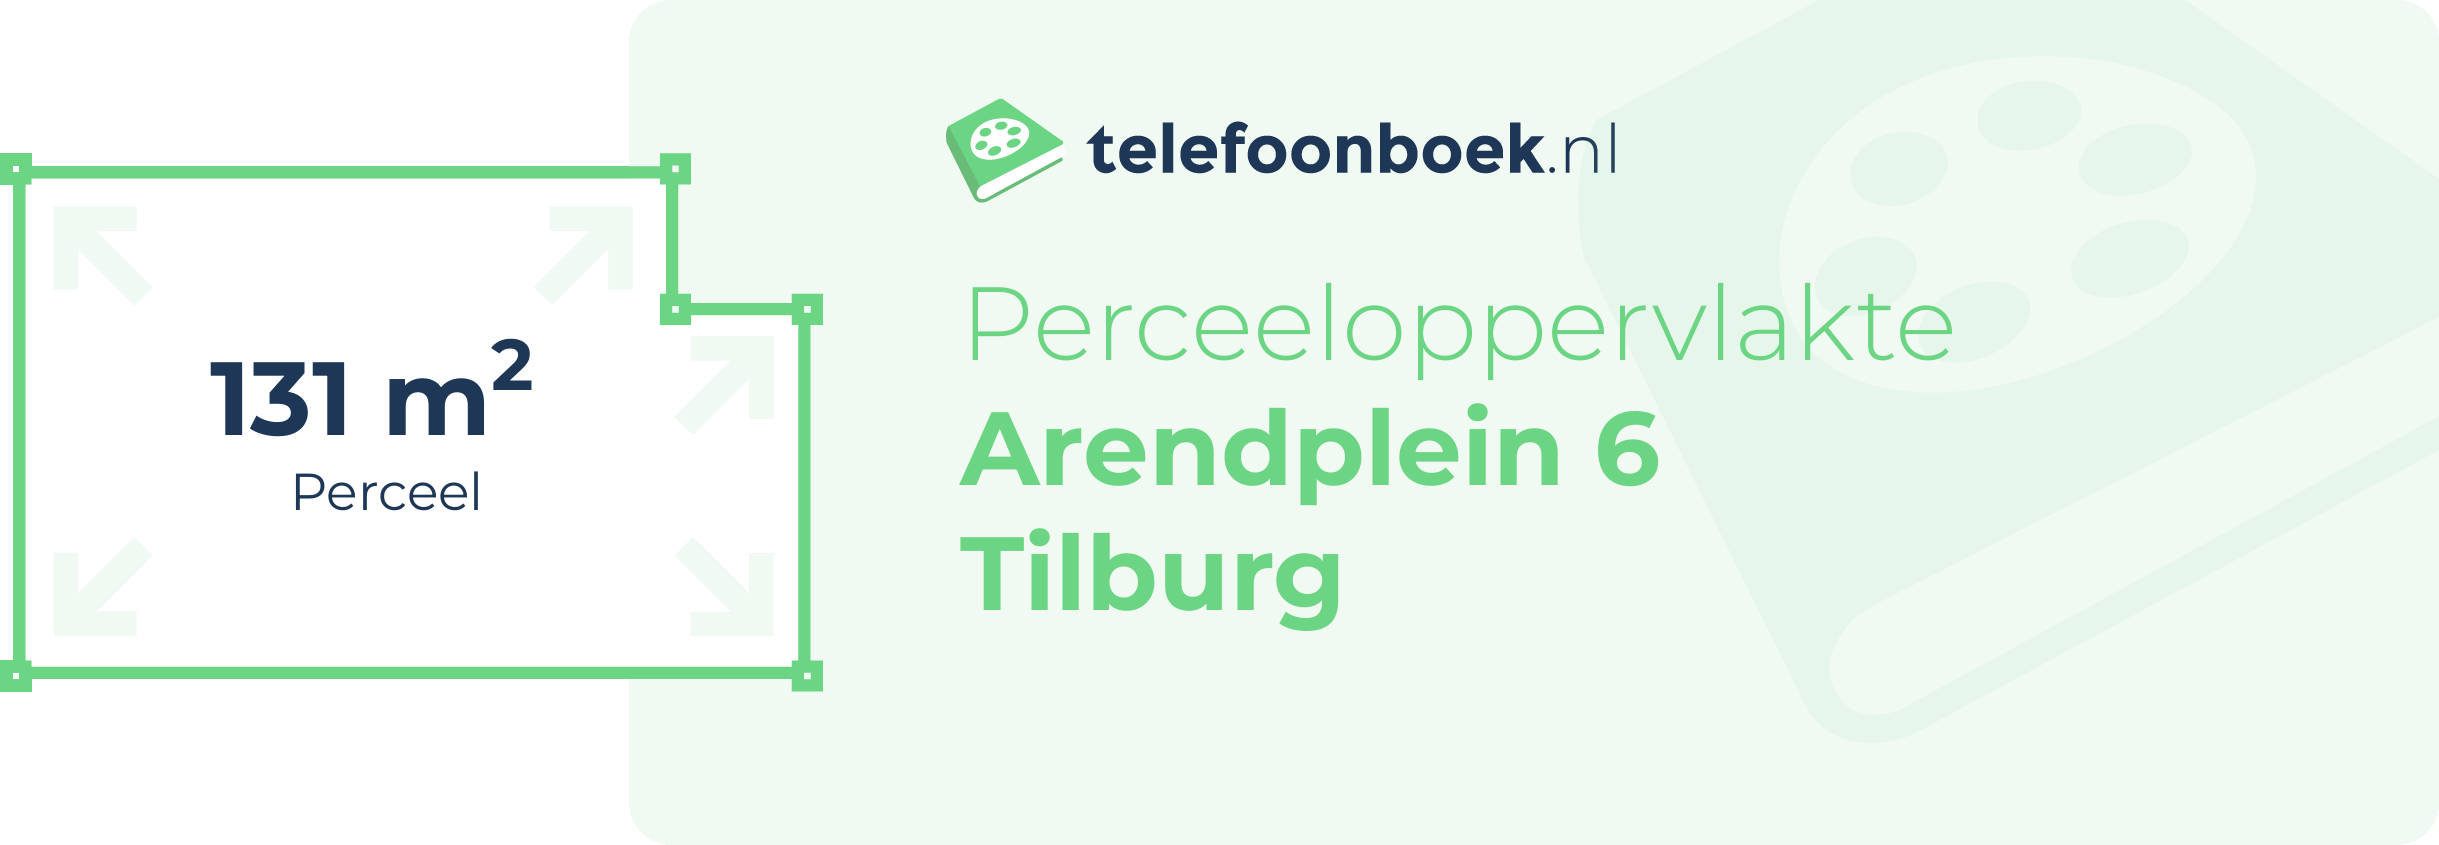 Perceeloppervlakte Arendplein 6 Tilburg